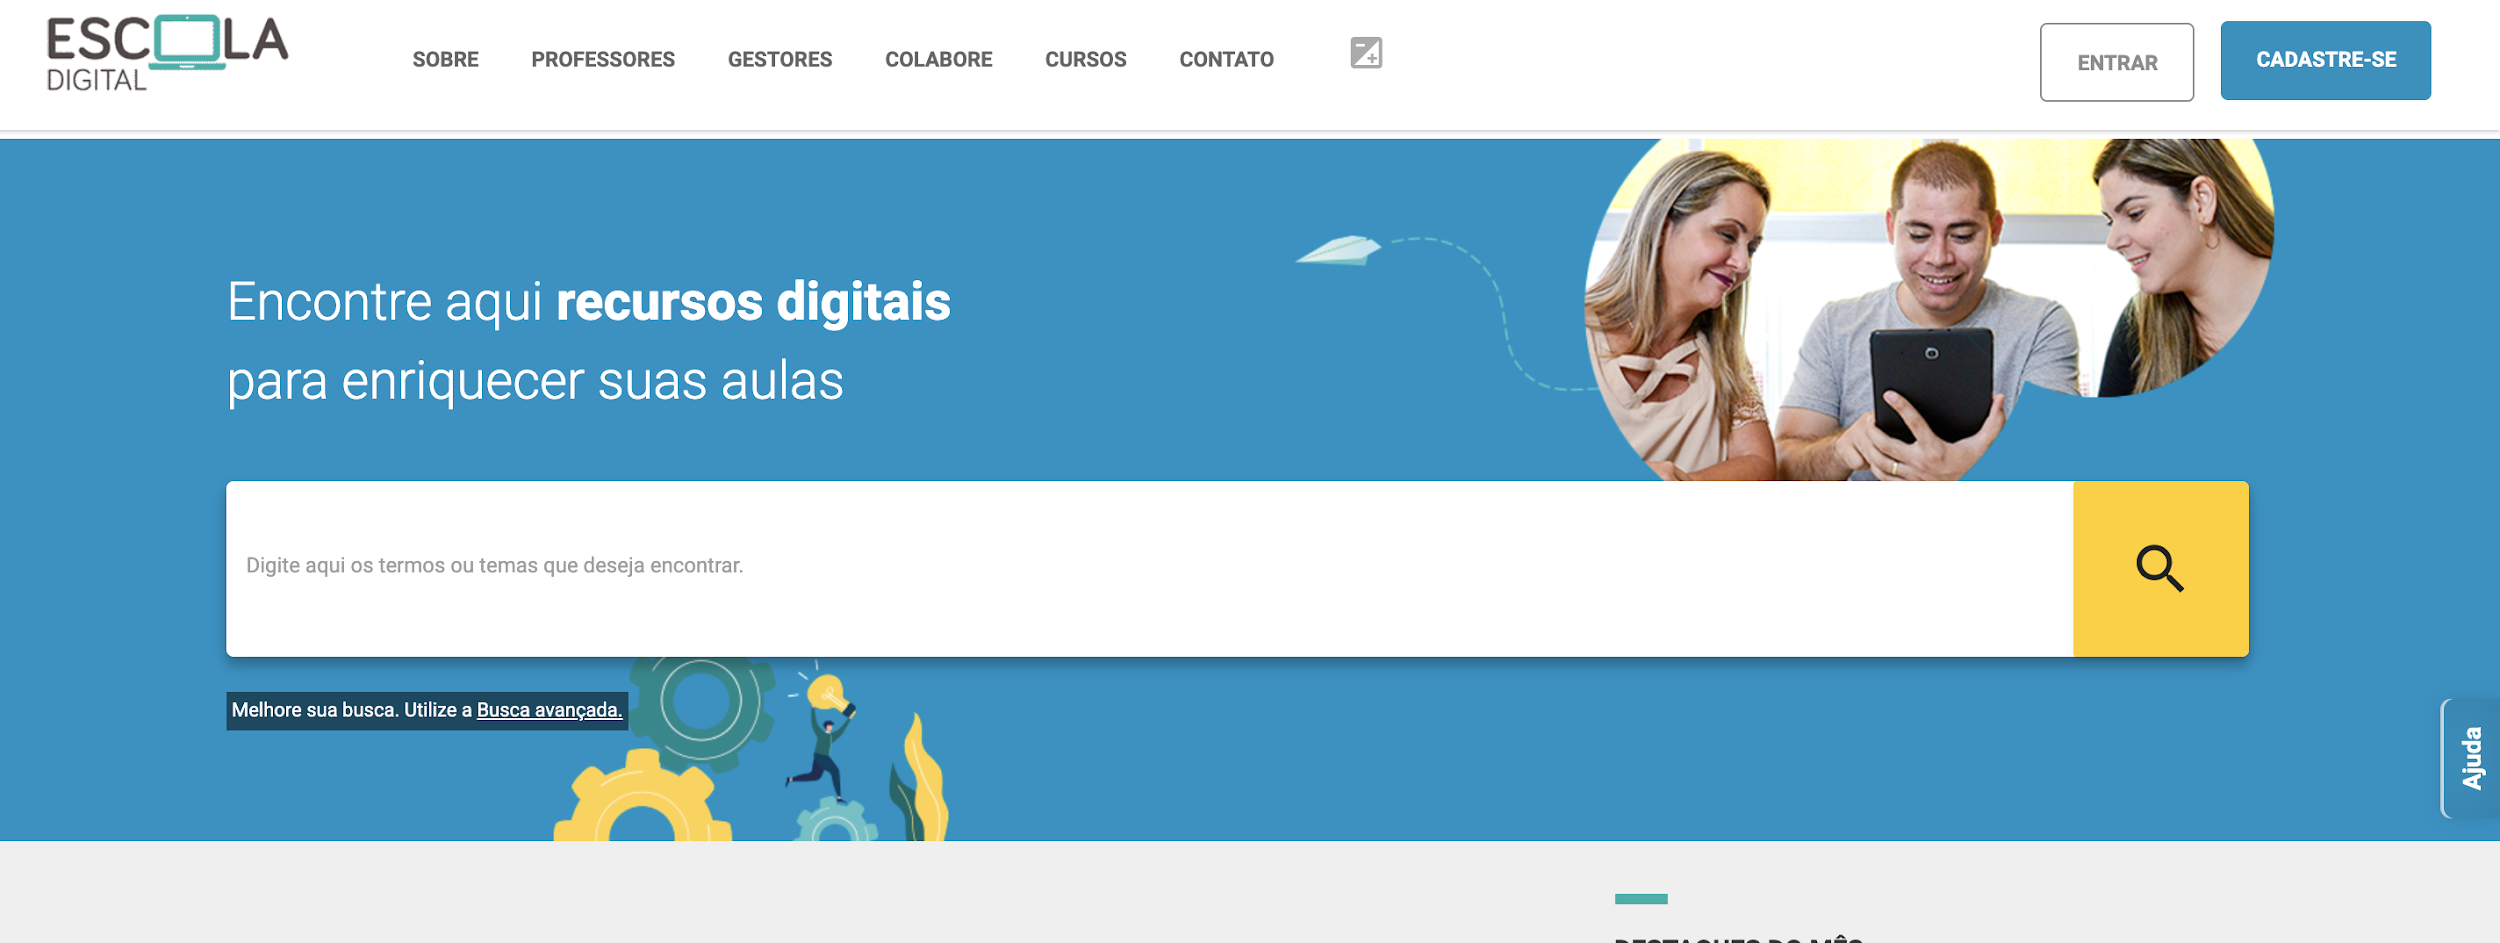 Escola Digital como exemplo de plataforma digitais para educação